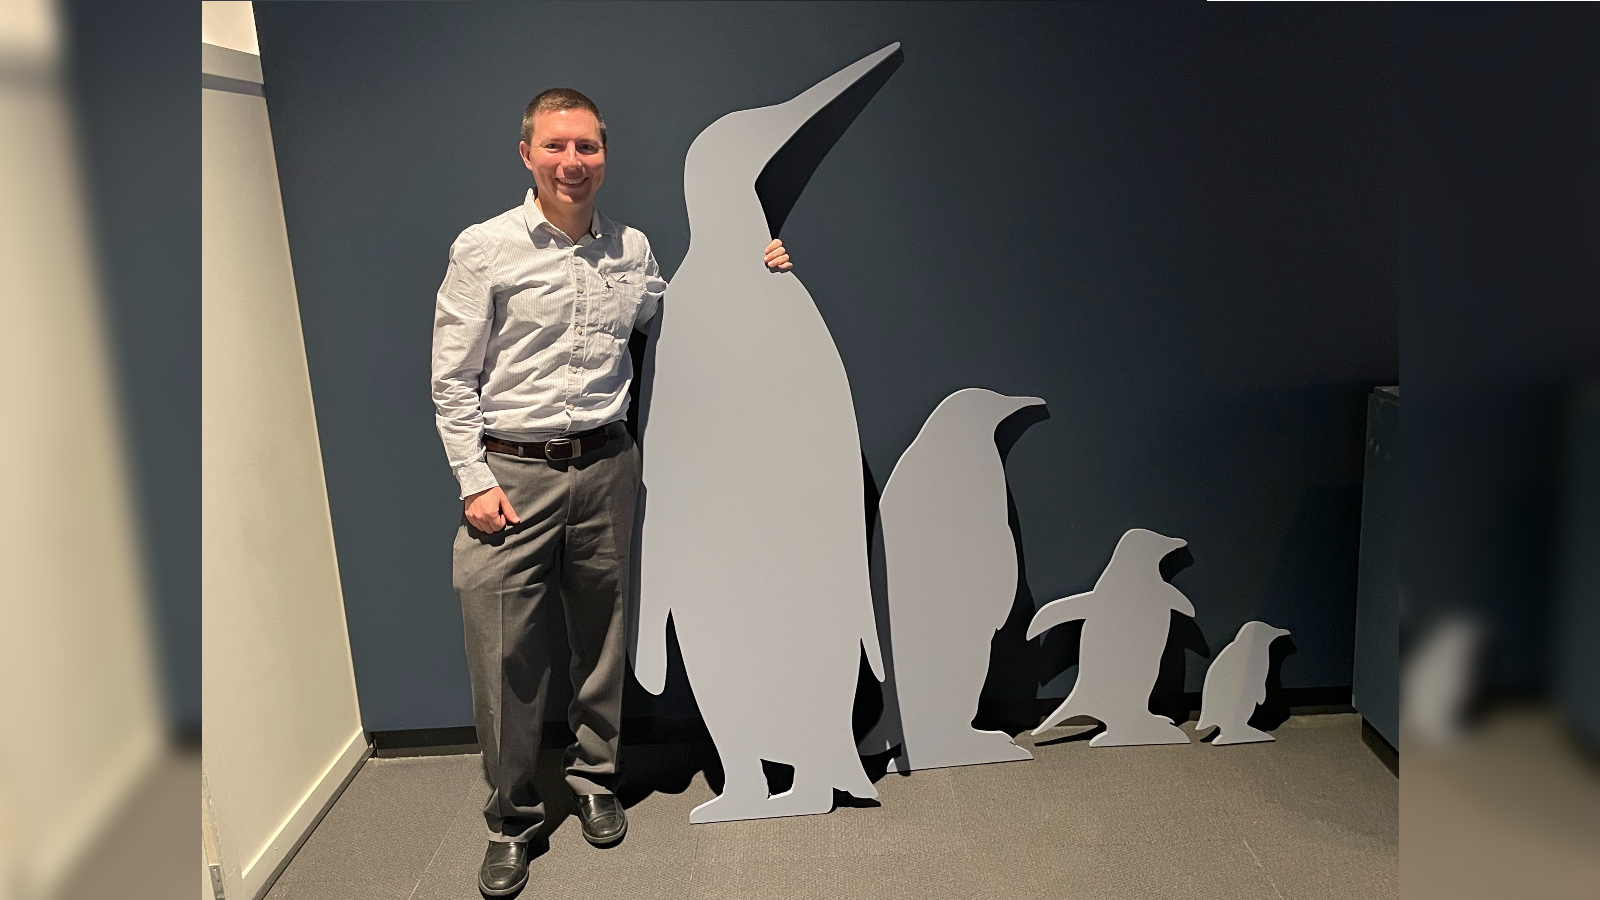 Daniel Ksepka stands next to a cutout of the penguin Kumimanu fordycei.